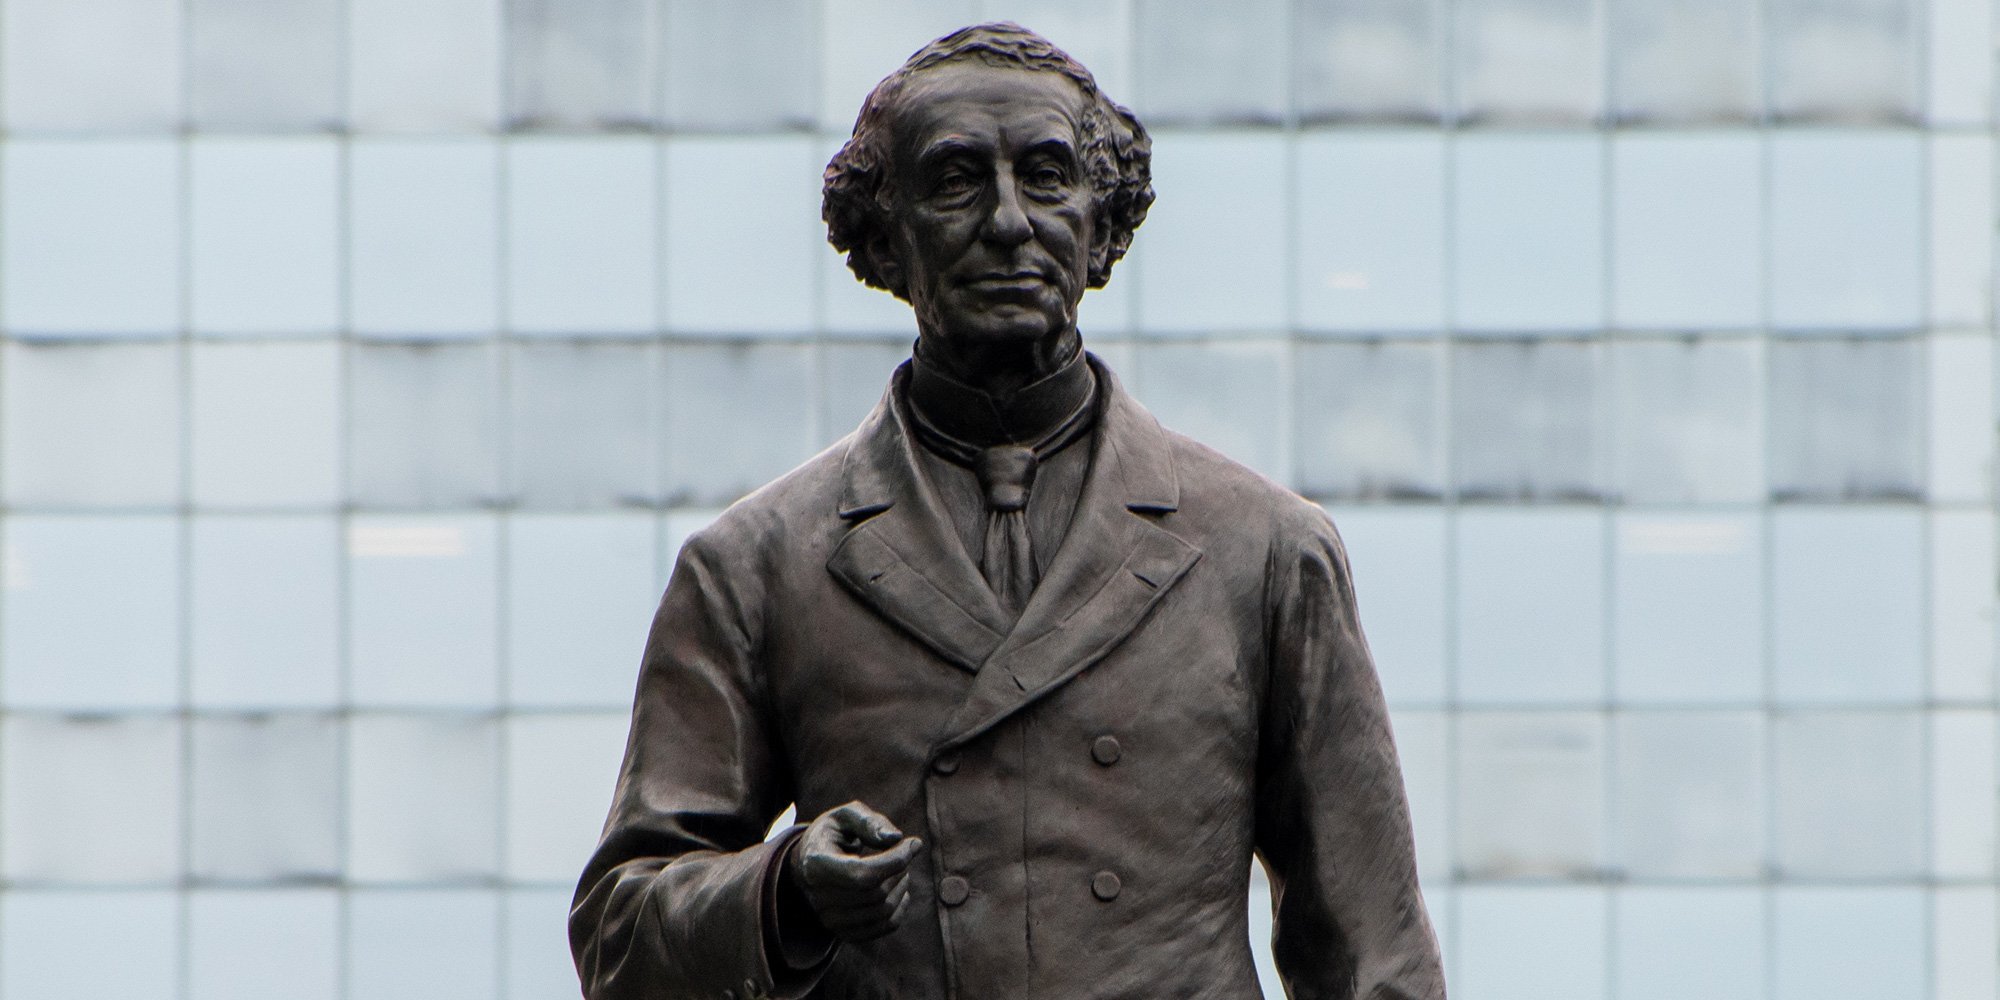 Sir John A MacDonald statue in Hamilton, Ontario